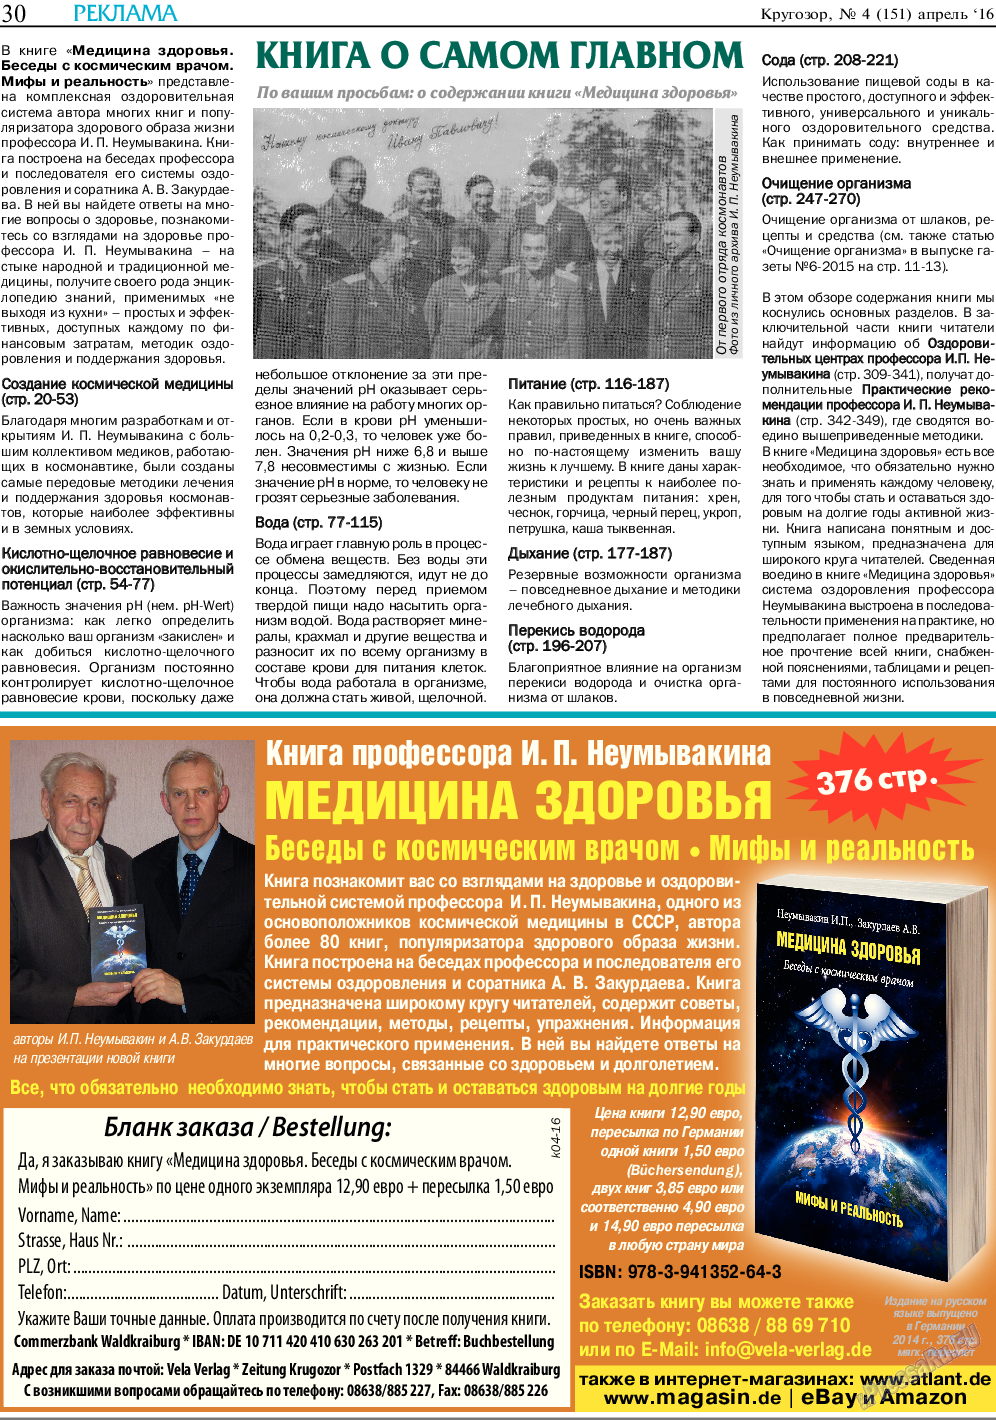 Кругозор, газета. 2016 №4 стр.30